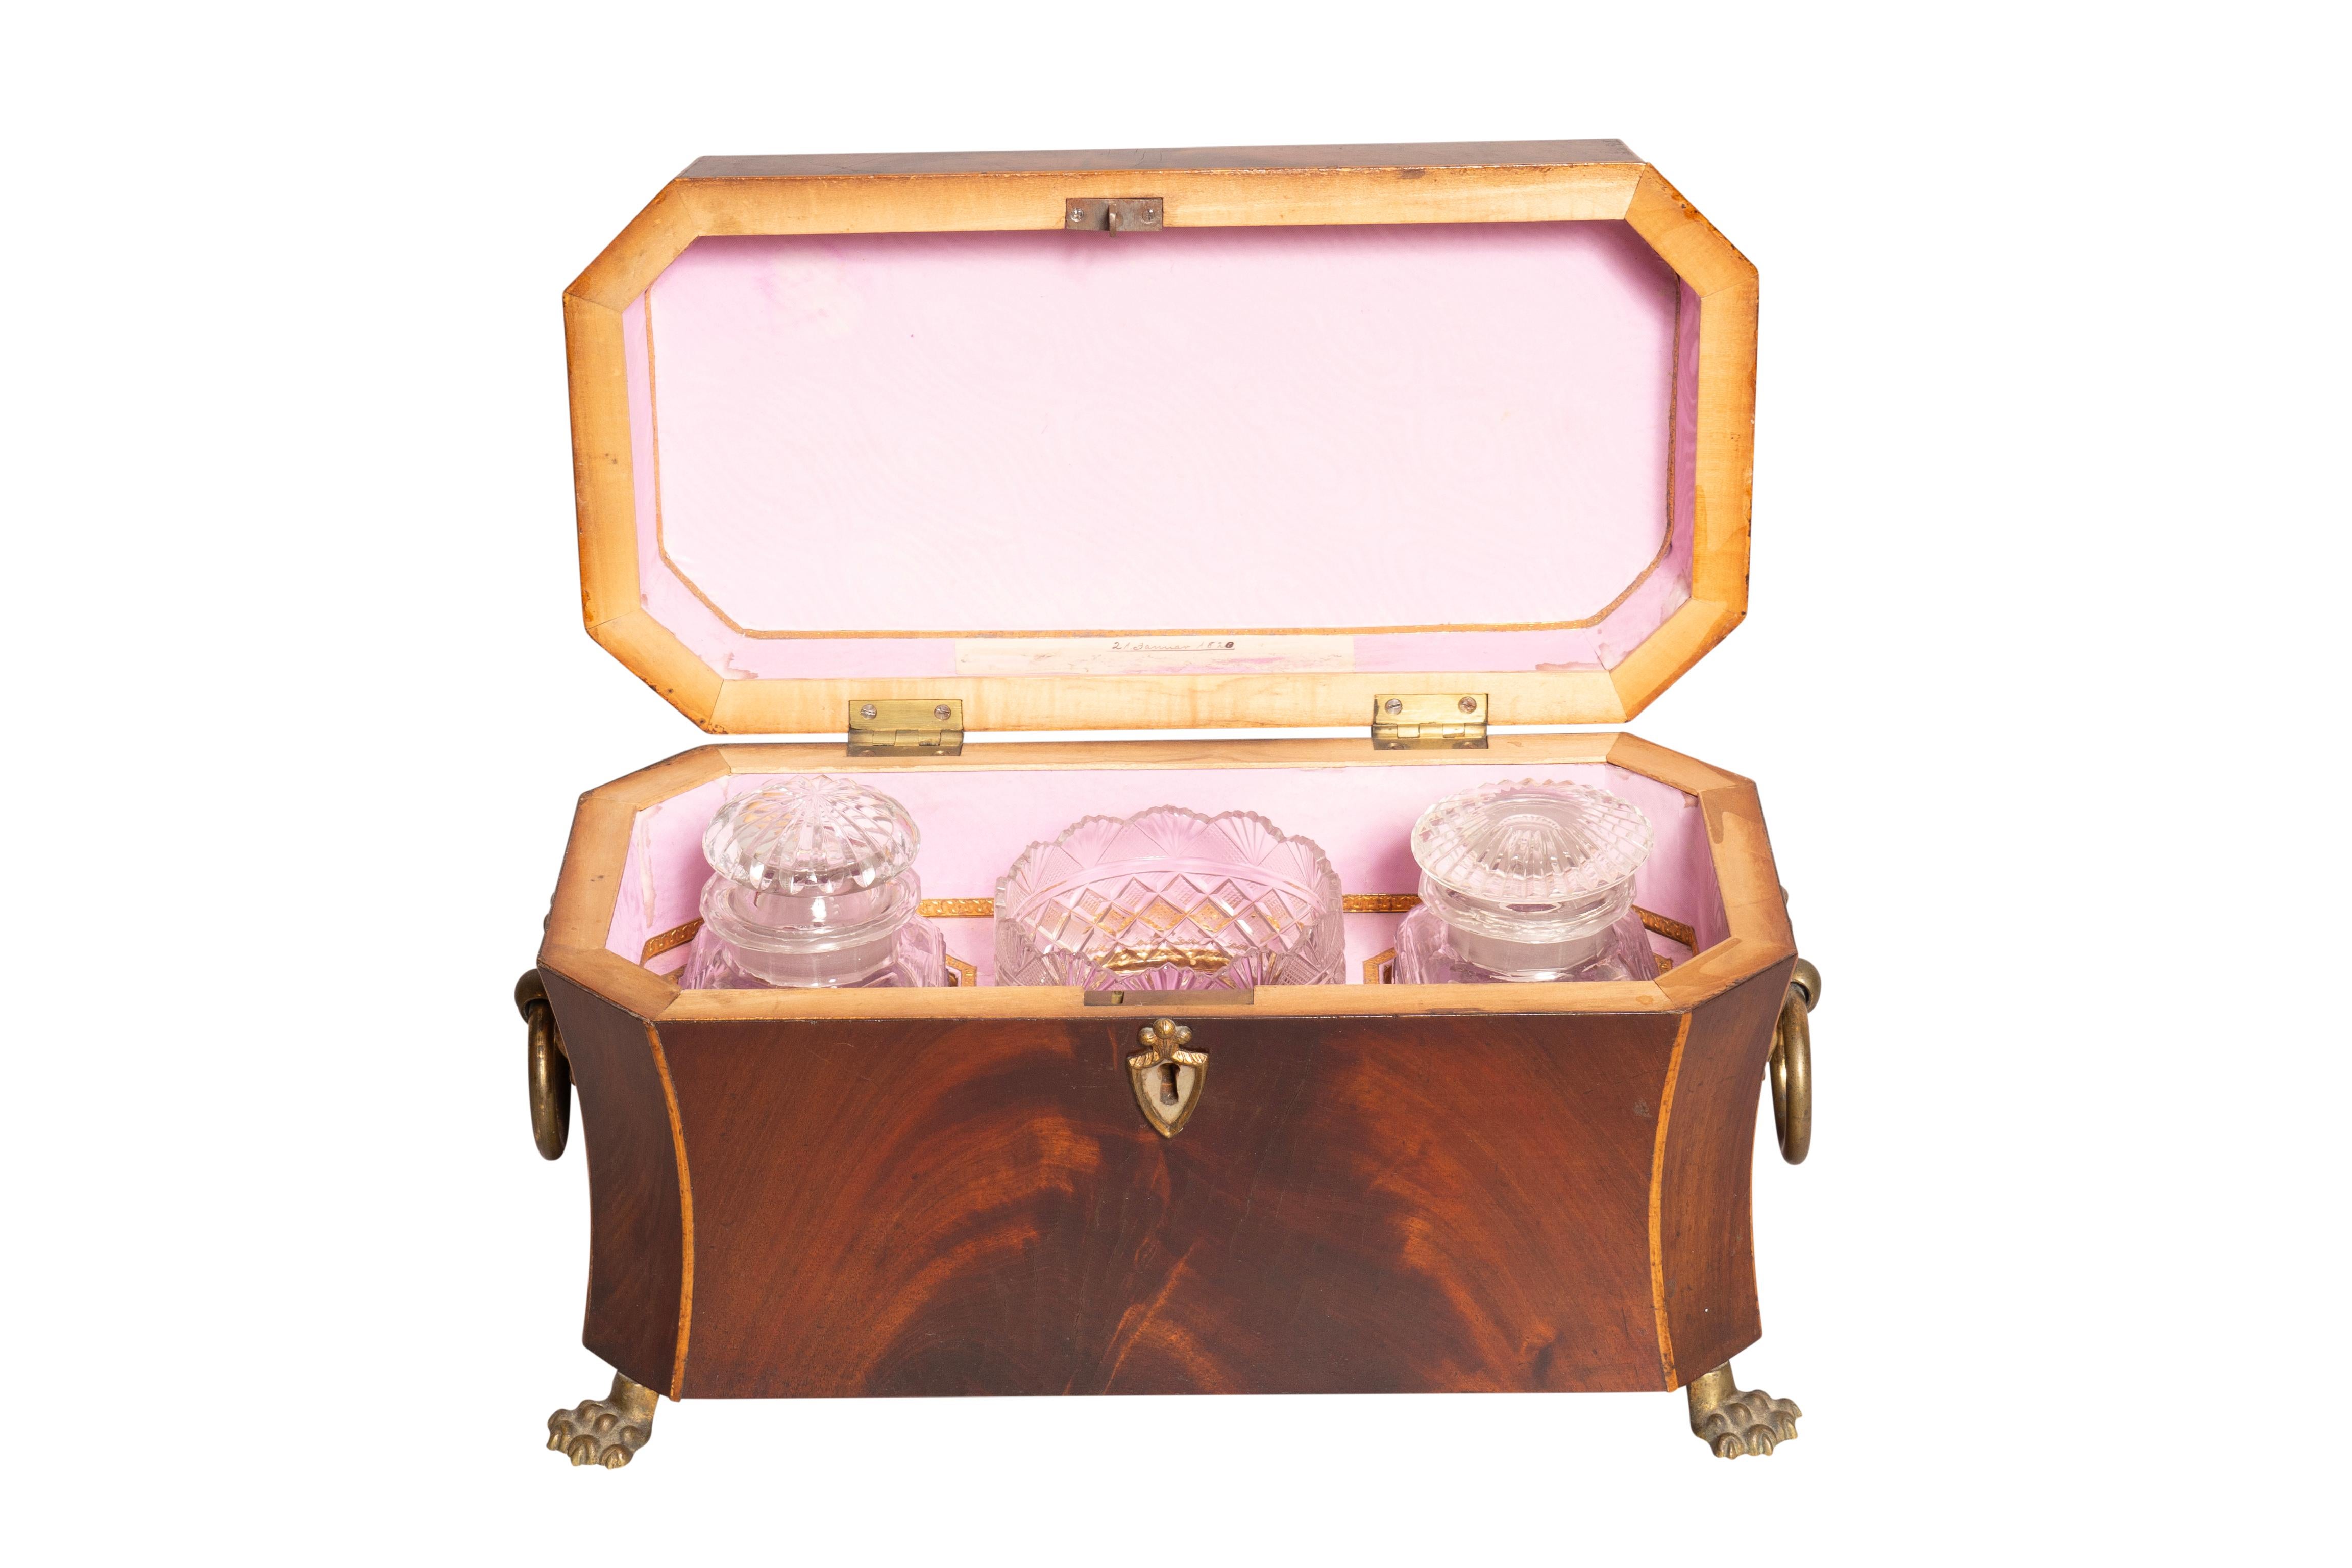 Feinste Qualität vom 2. Januar 1820. Rechteckiger Klappdeckel mit Buchsbaumschnüren am Rand. Das Innere ist mit rosafarbenem Papier ausgekleidet und enthält zwei geschliffene Teedosen aus Glas und eine Rührschüssel. Geformte Seiten, die das Können